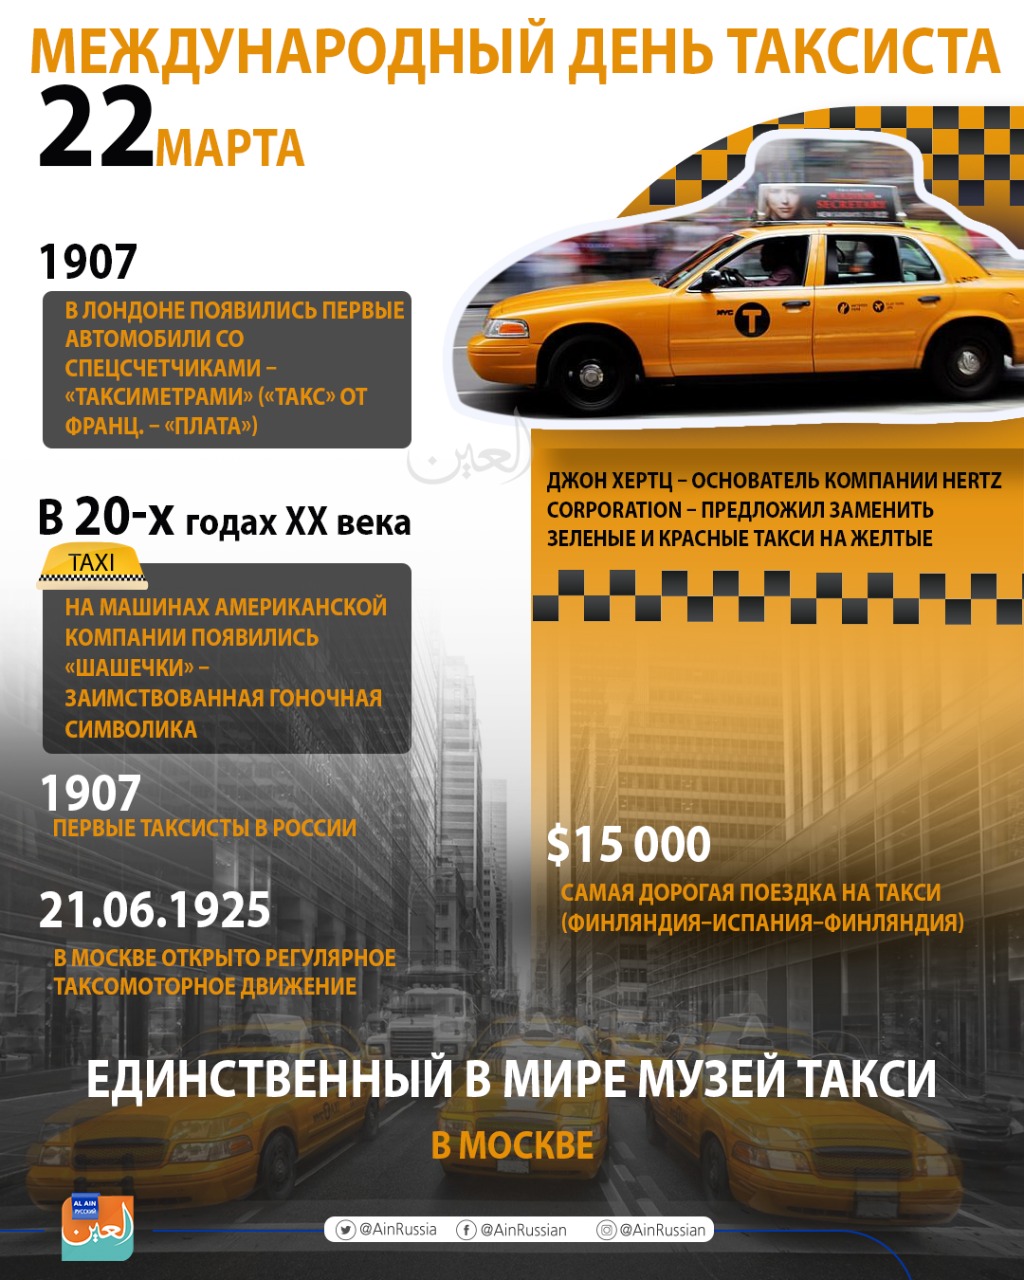 Работа в такси в день. Международный день таксиста. Всемирный день такси. День таксы. Международный день праздник таксиста.